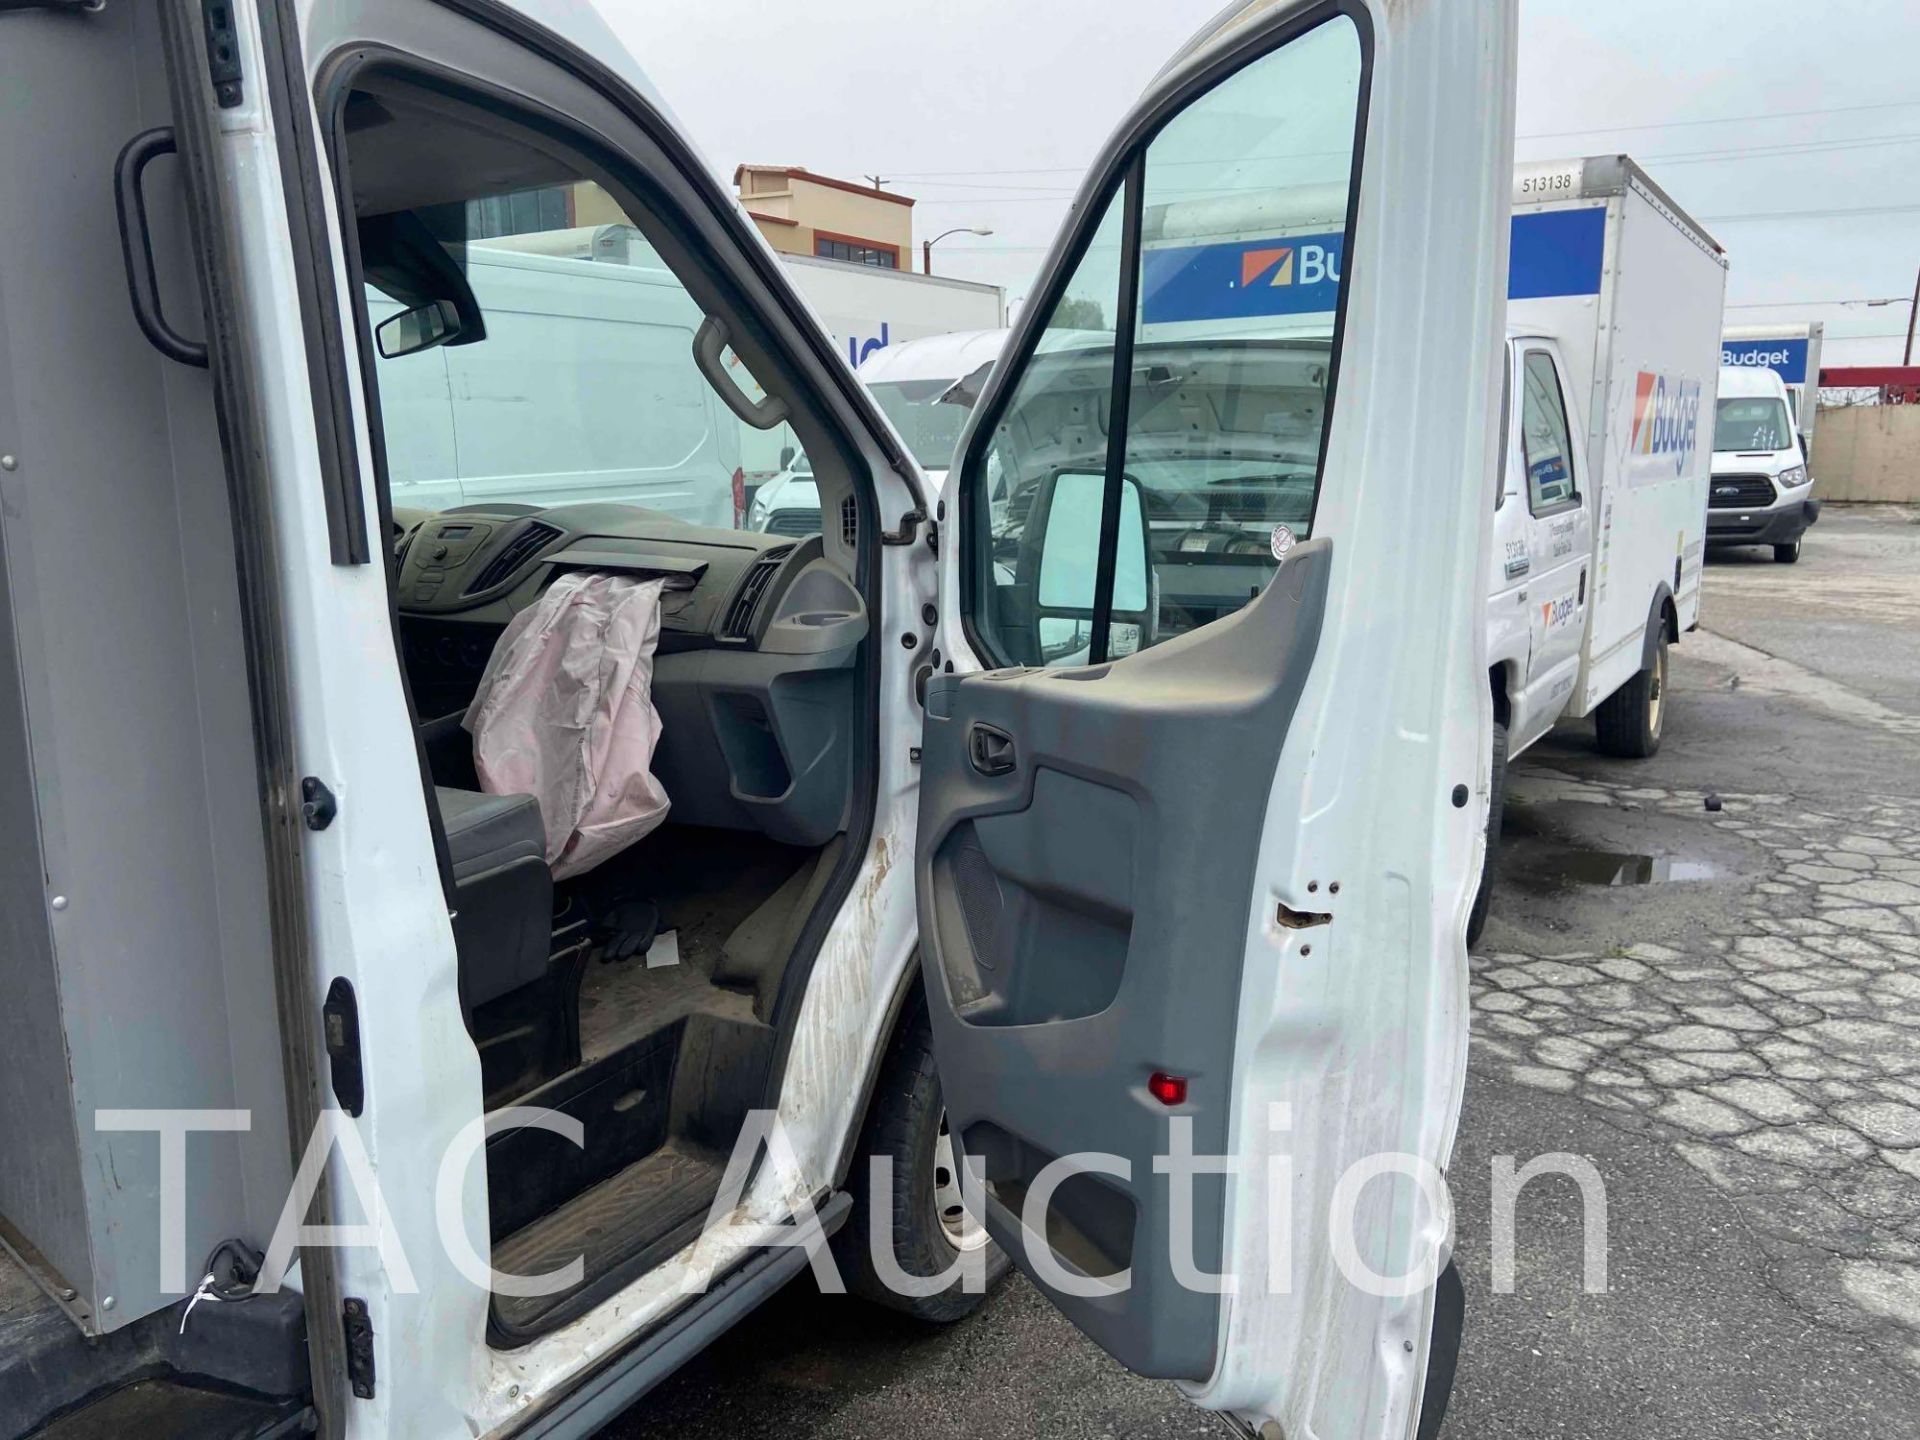 2017 Ford Transit 150 Cargo Van - Image 55 of 86